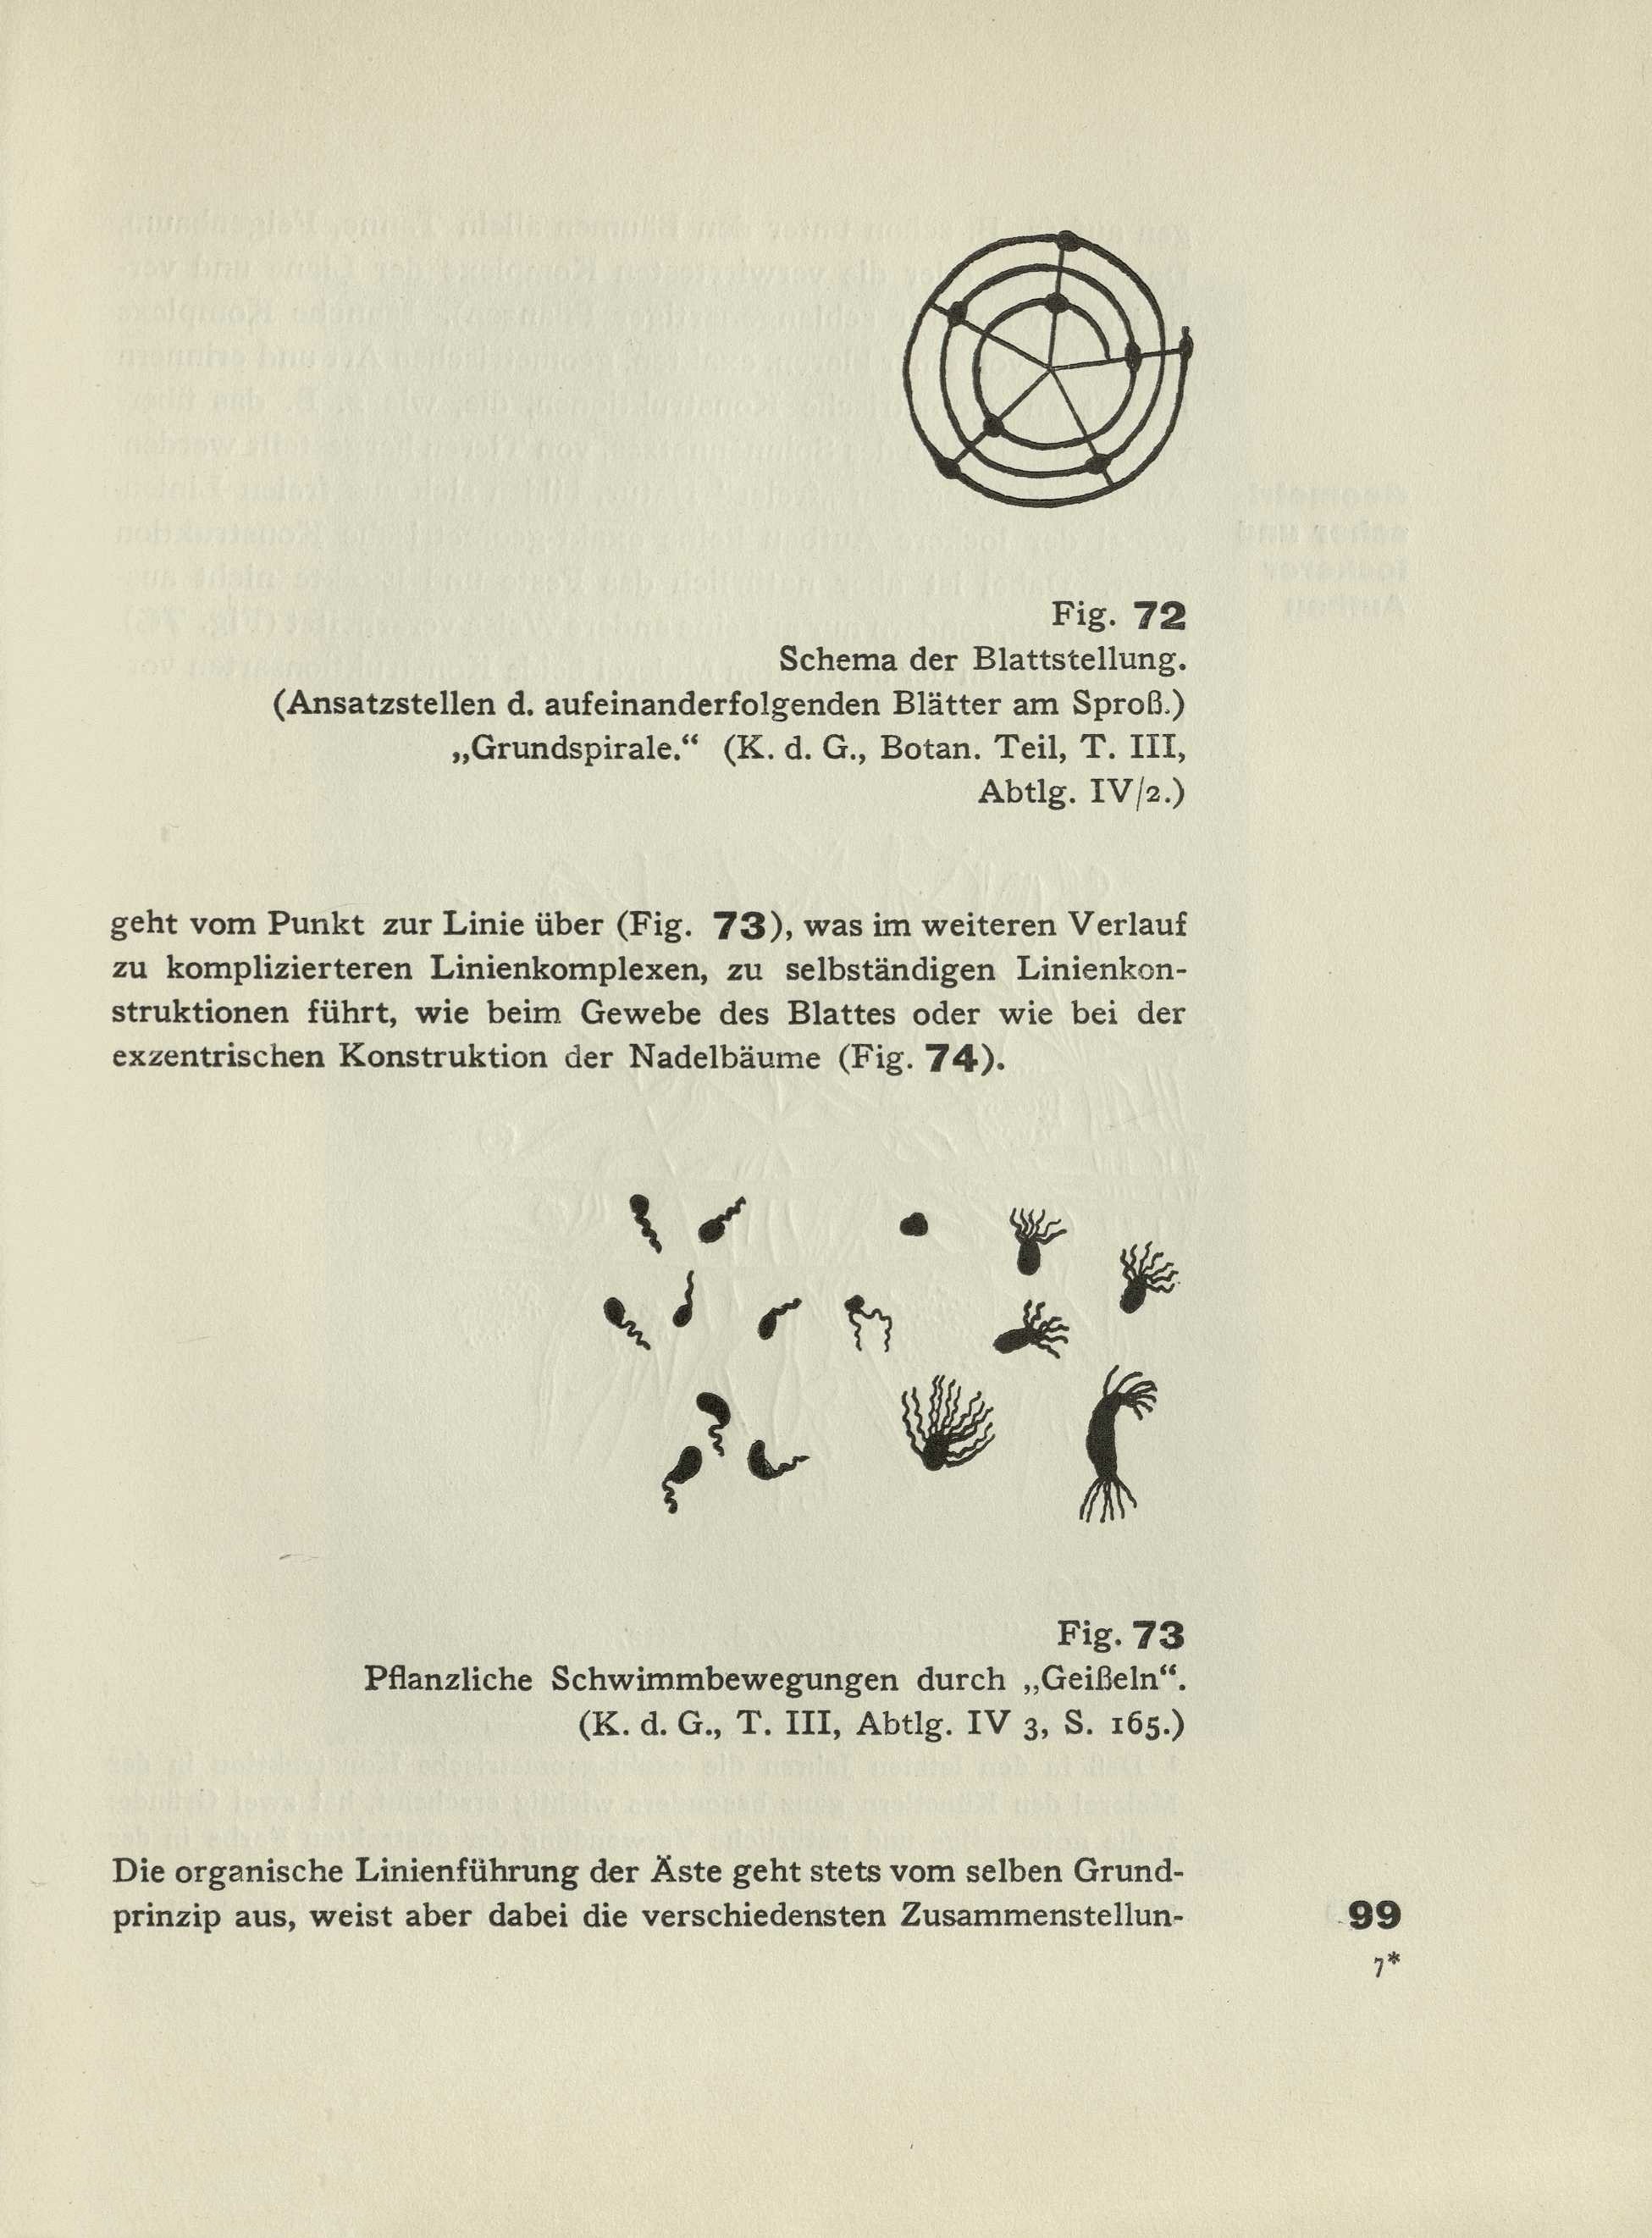 Punkt und Linie zu Fläche : Beitrag zur Analyse der malerischen Elemente / Kandinsky. — 2. auflage, unverändert. — München : Albert Langen Verlag, 1928